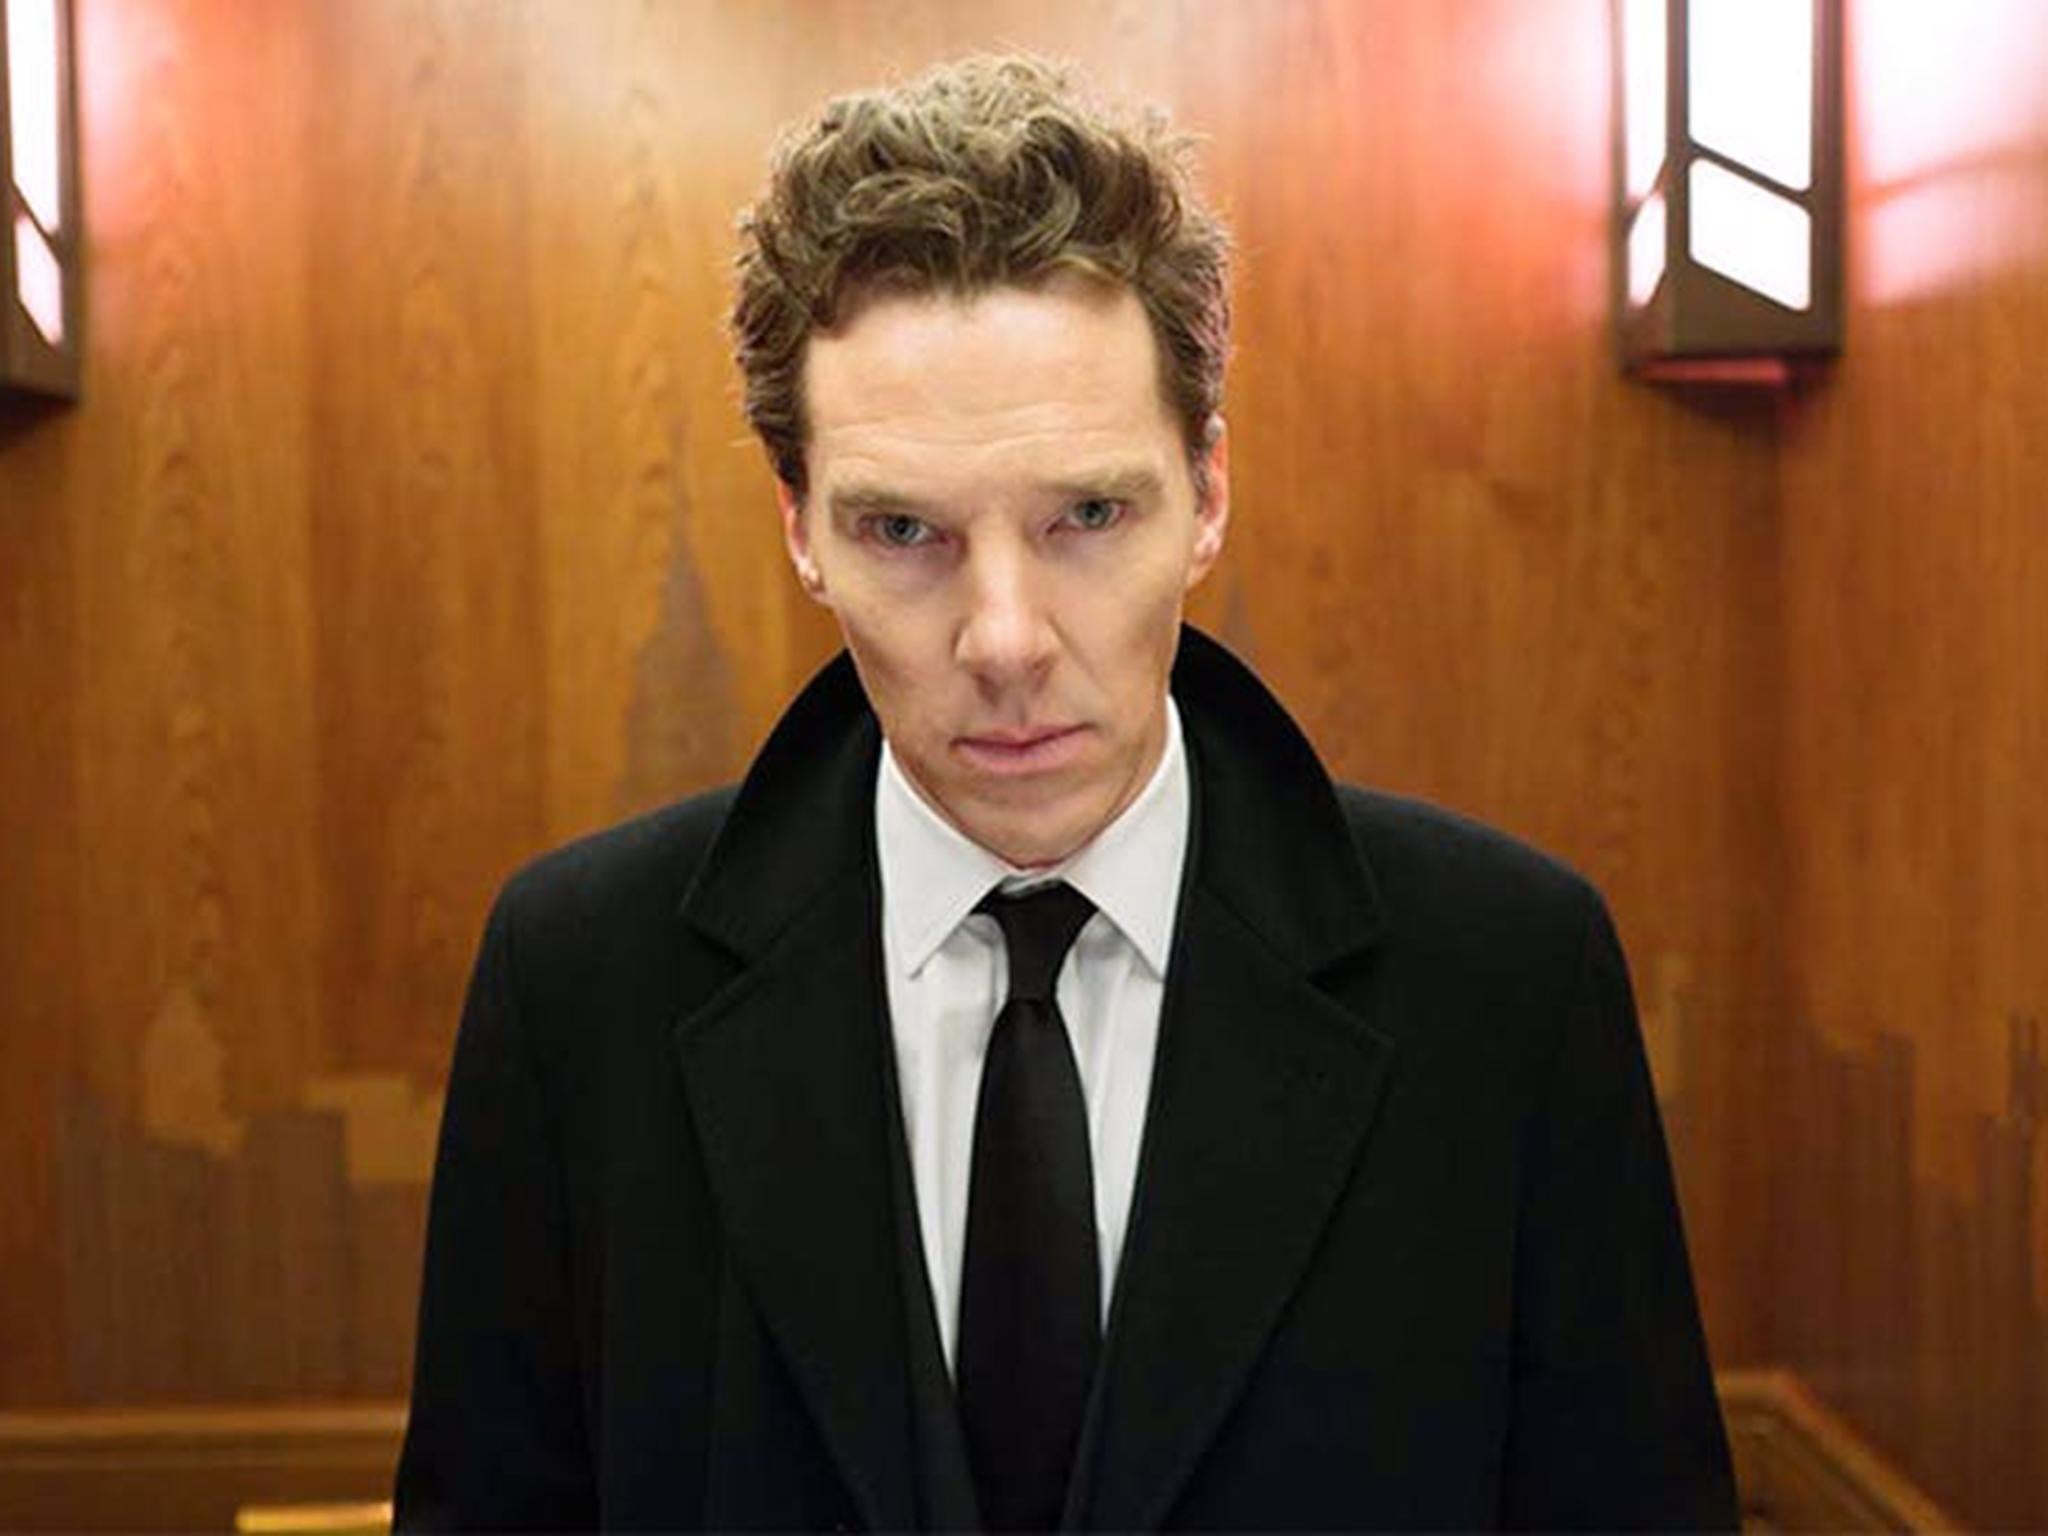 Benedict Cumberbatch in ‘Patrick Melrose’